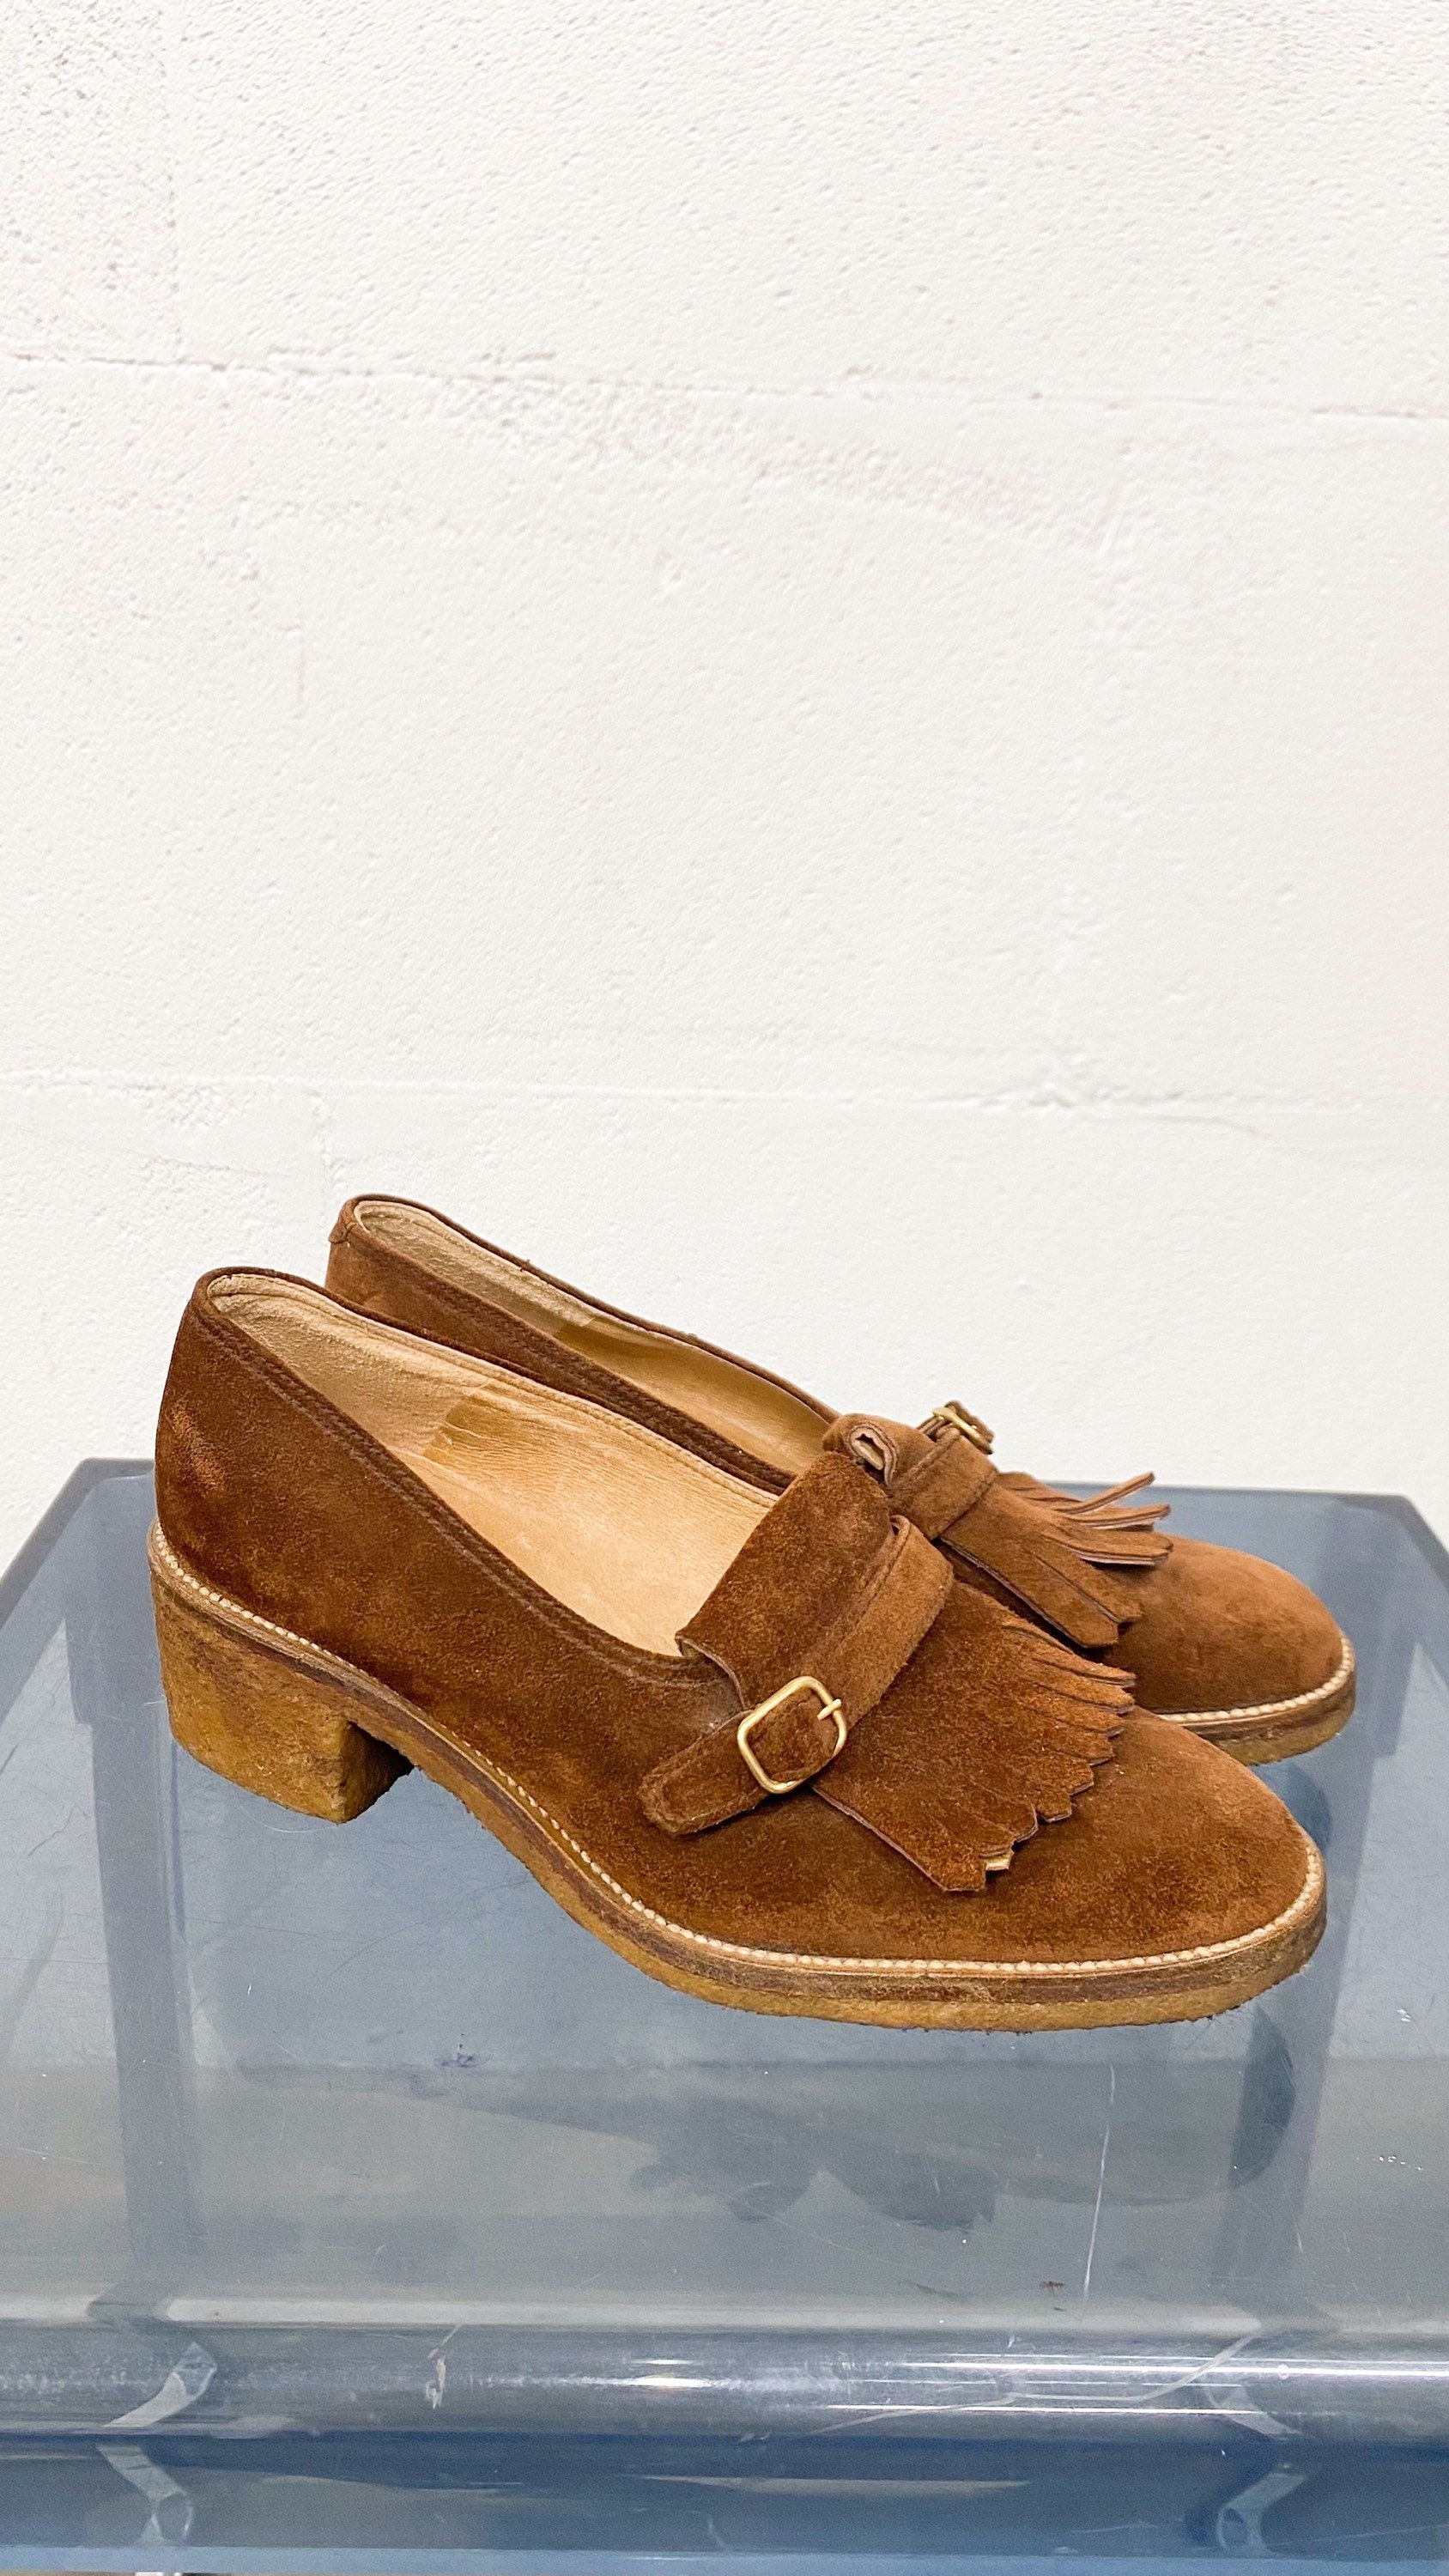 Français chaussures anciennes, escarpins en cuir marron chocolat